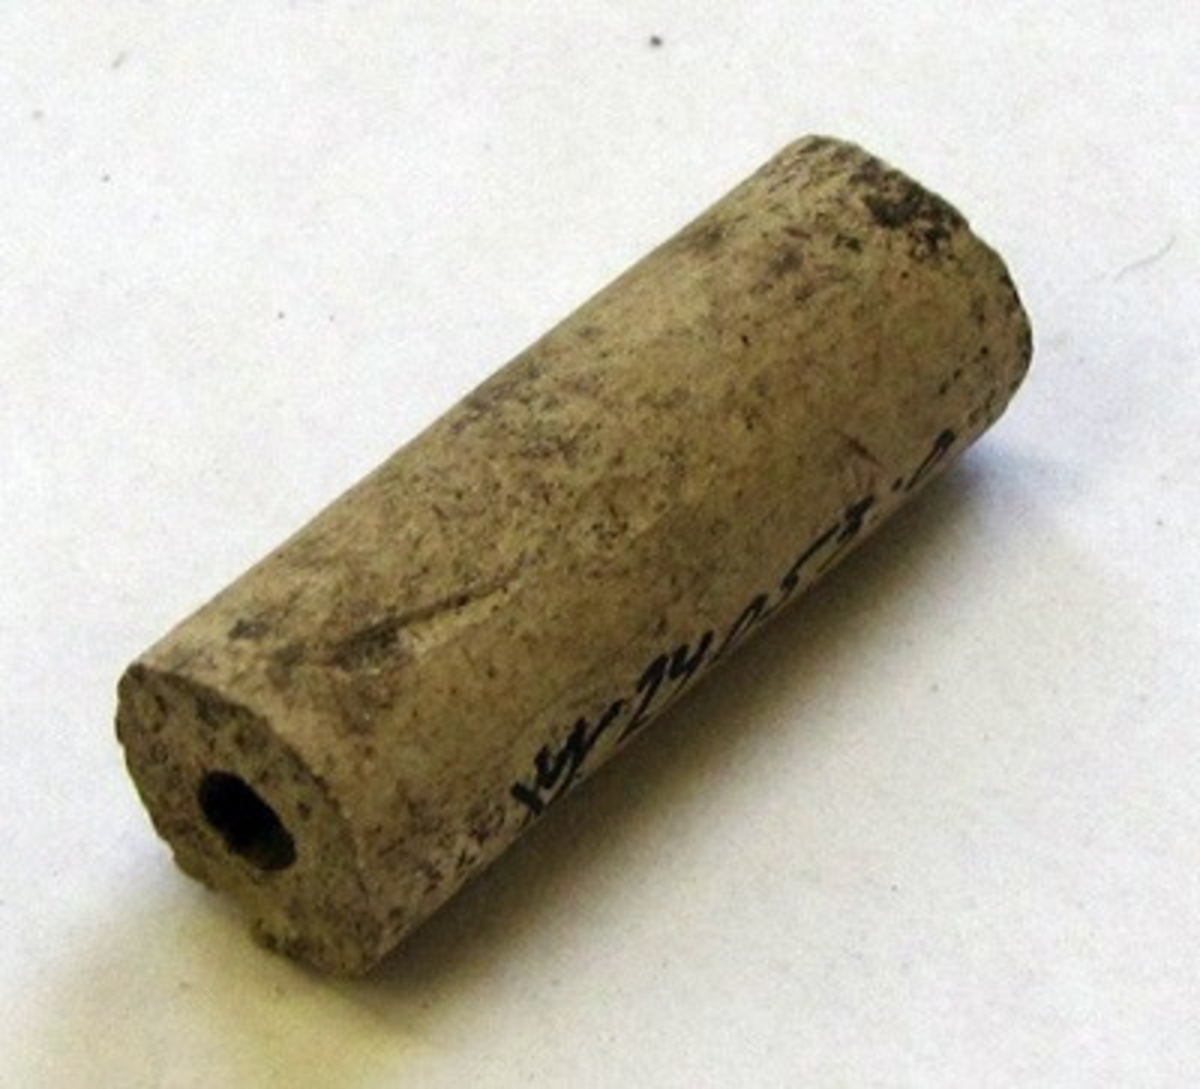 BRÄTTE. LUNDBERG IIa. En av 36 kritpipsskaft, vit lera.

År 1943 utförde arkeolog Erik B. Lundberg från riksantikvarieämbetet en arkeologisk utgrävning av den forna staden Brätte.